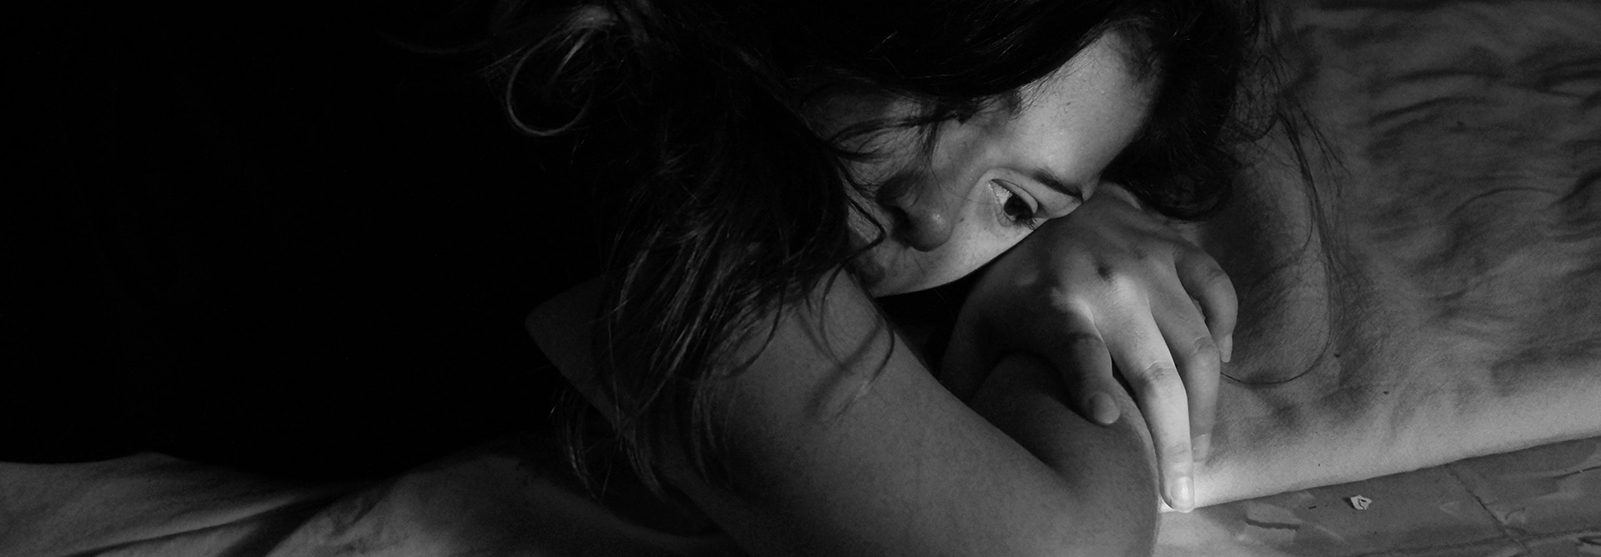 VAWA - виза жертвам домашнего насилия